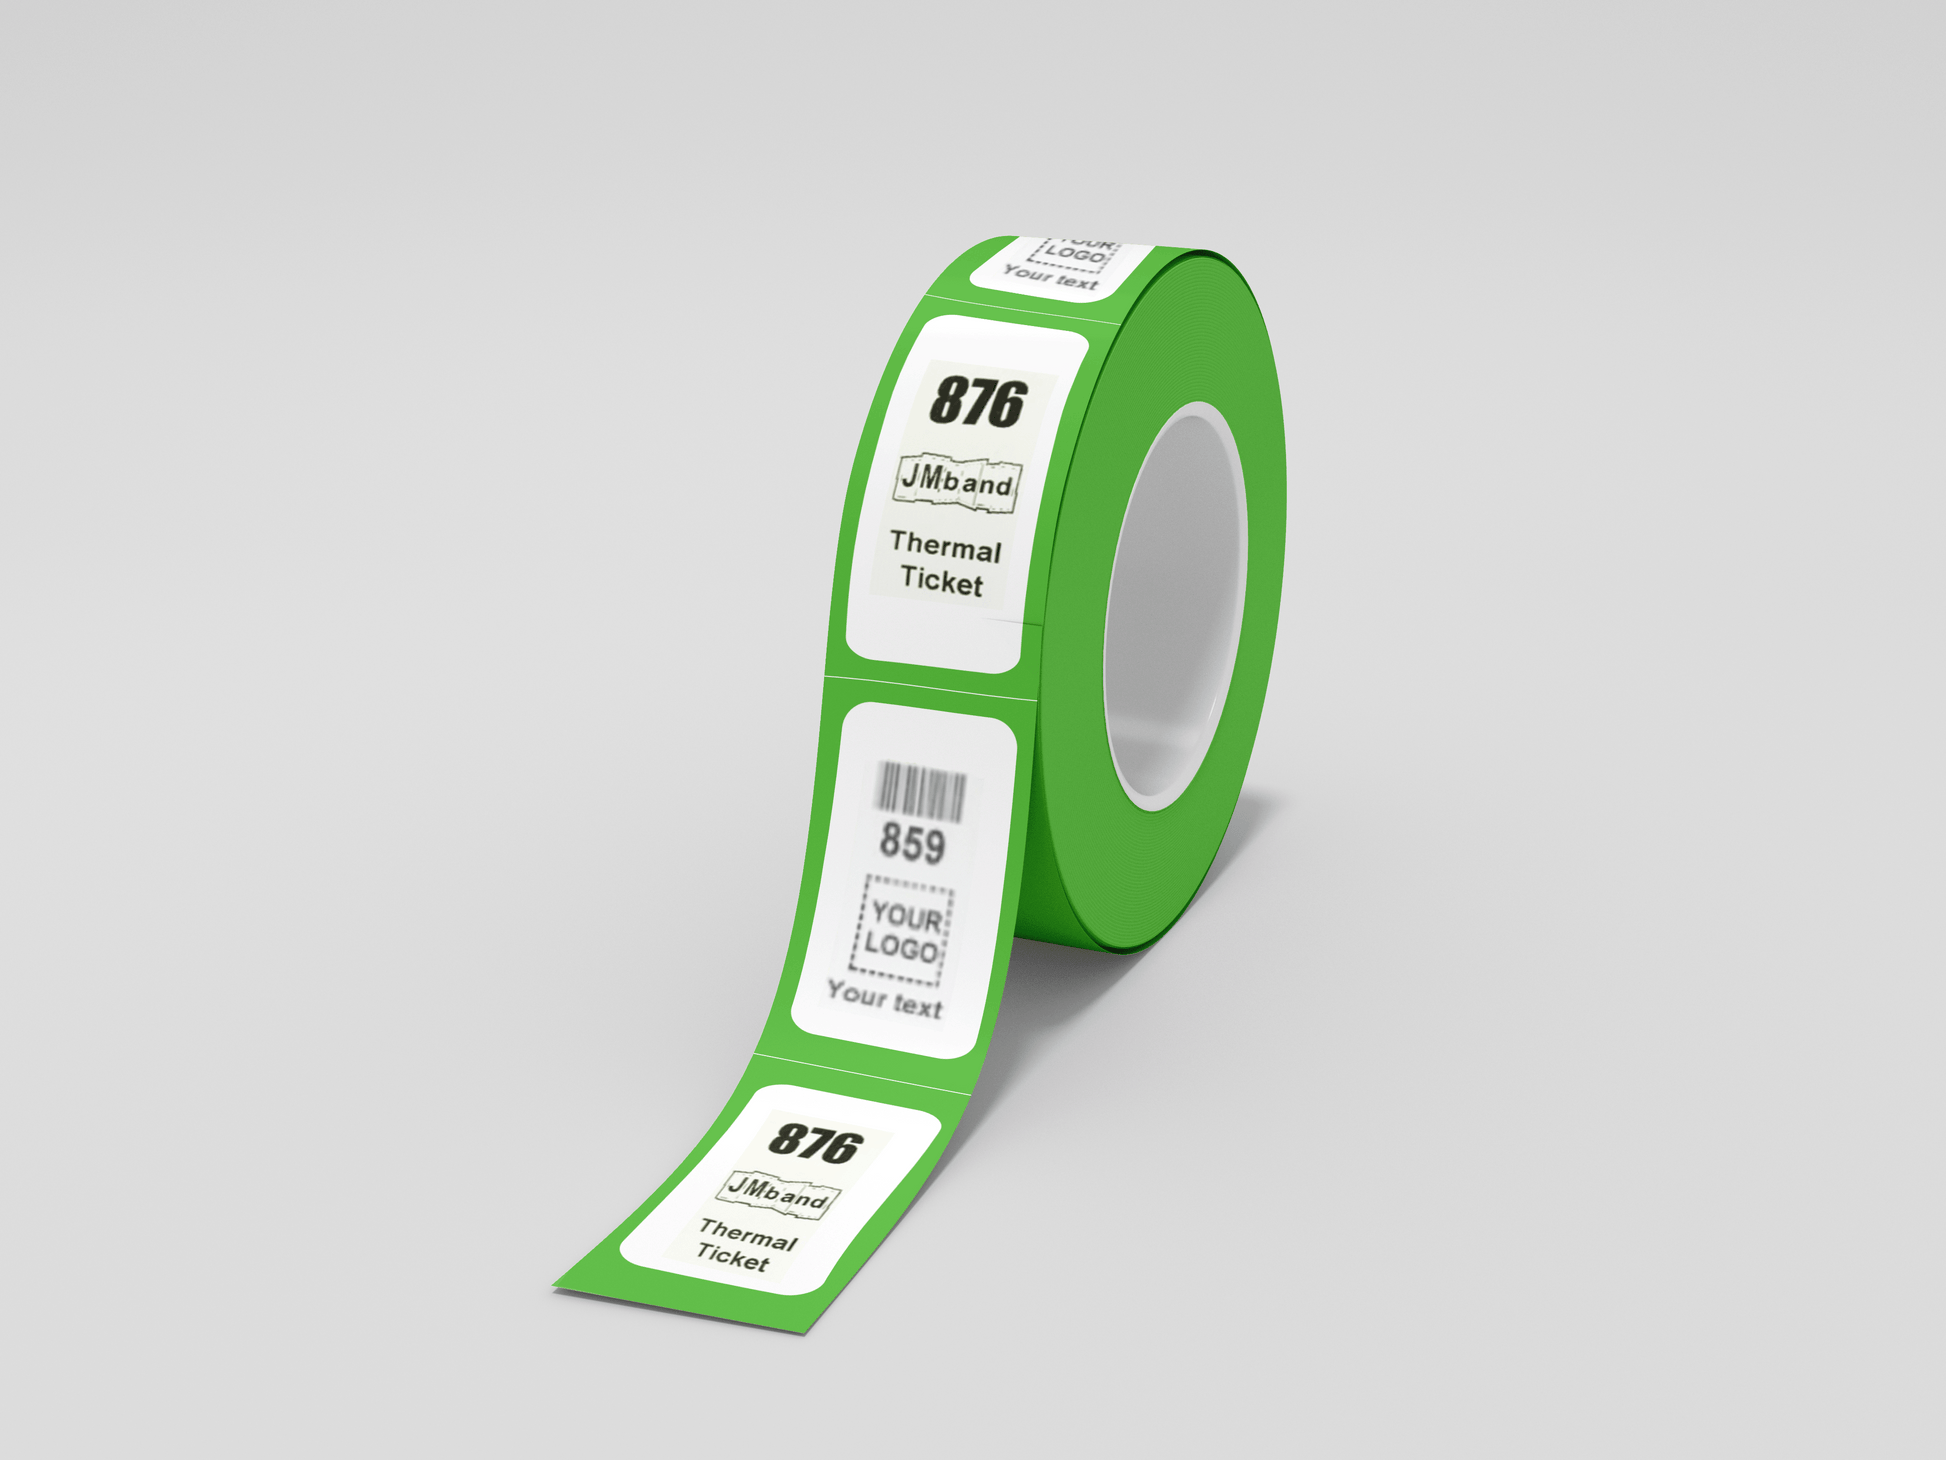 A Roll biljetter Z press Via eMail av grön biologiskt nedbrytbara tejp på vit bakgrund.